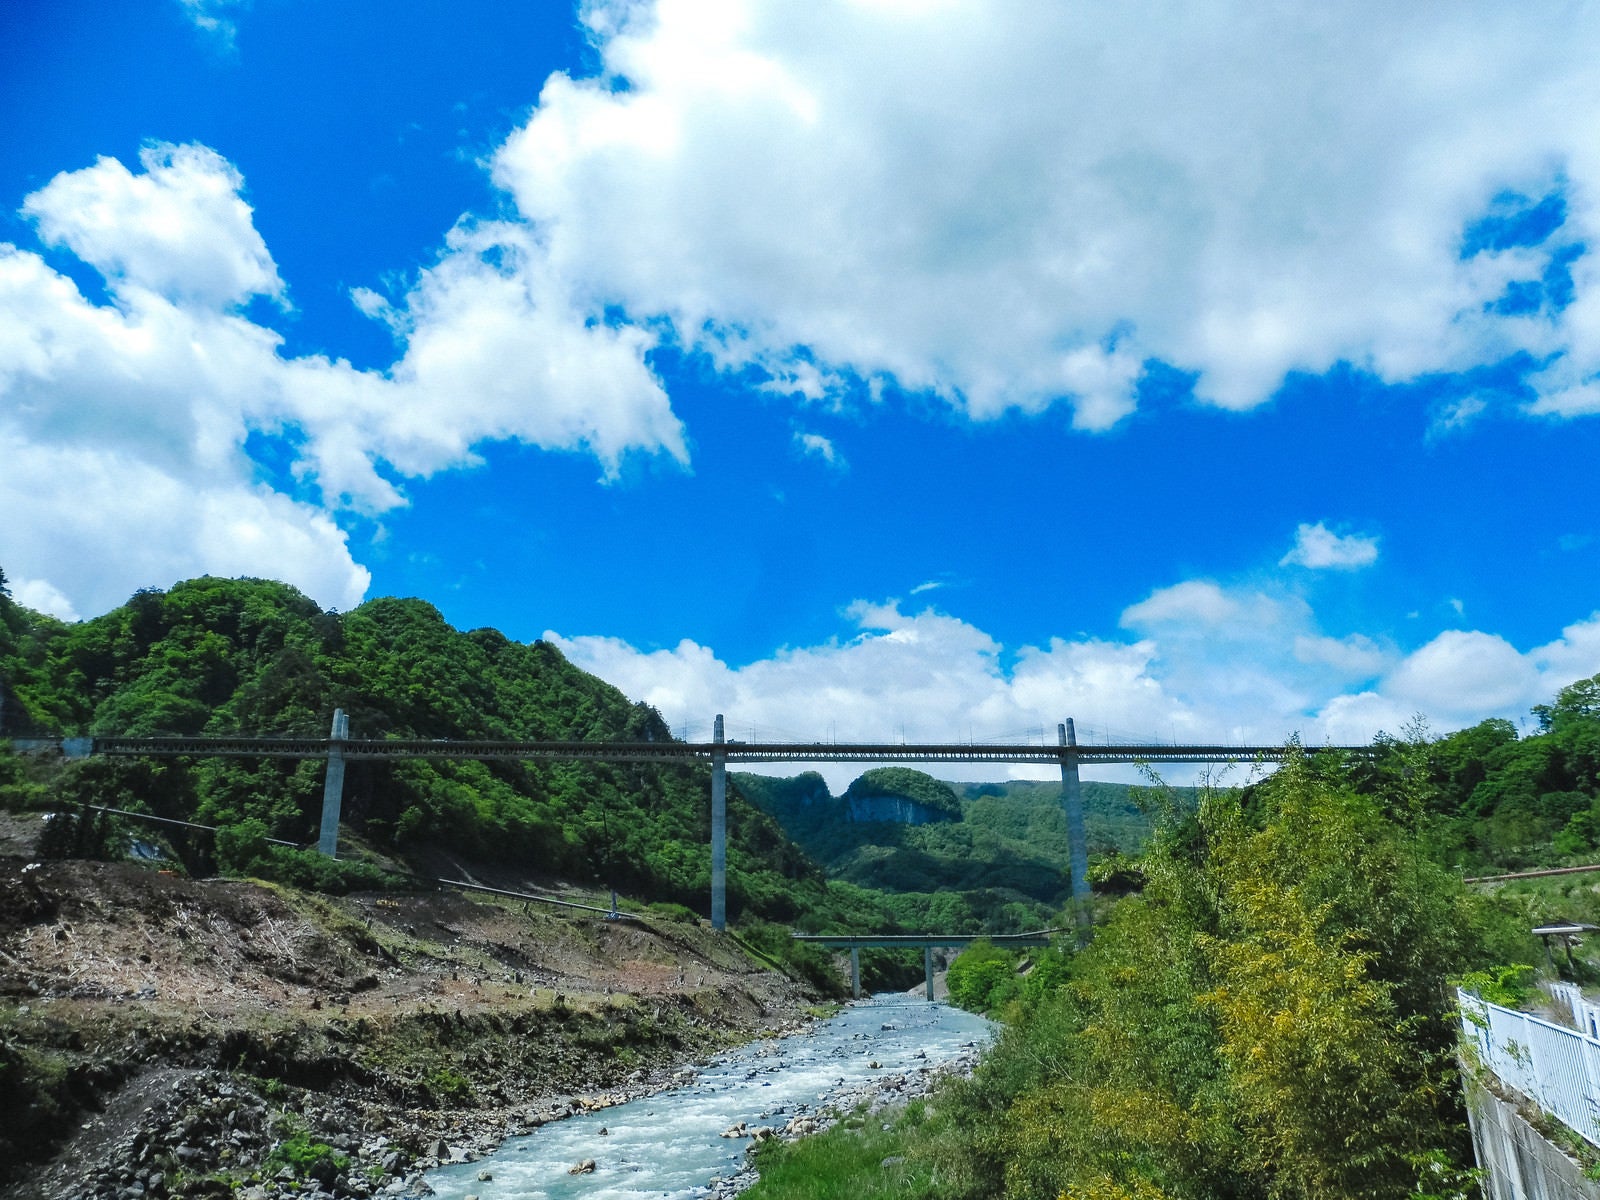 「吾妻川と丸岩の景観」の写真